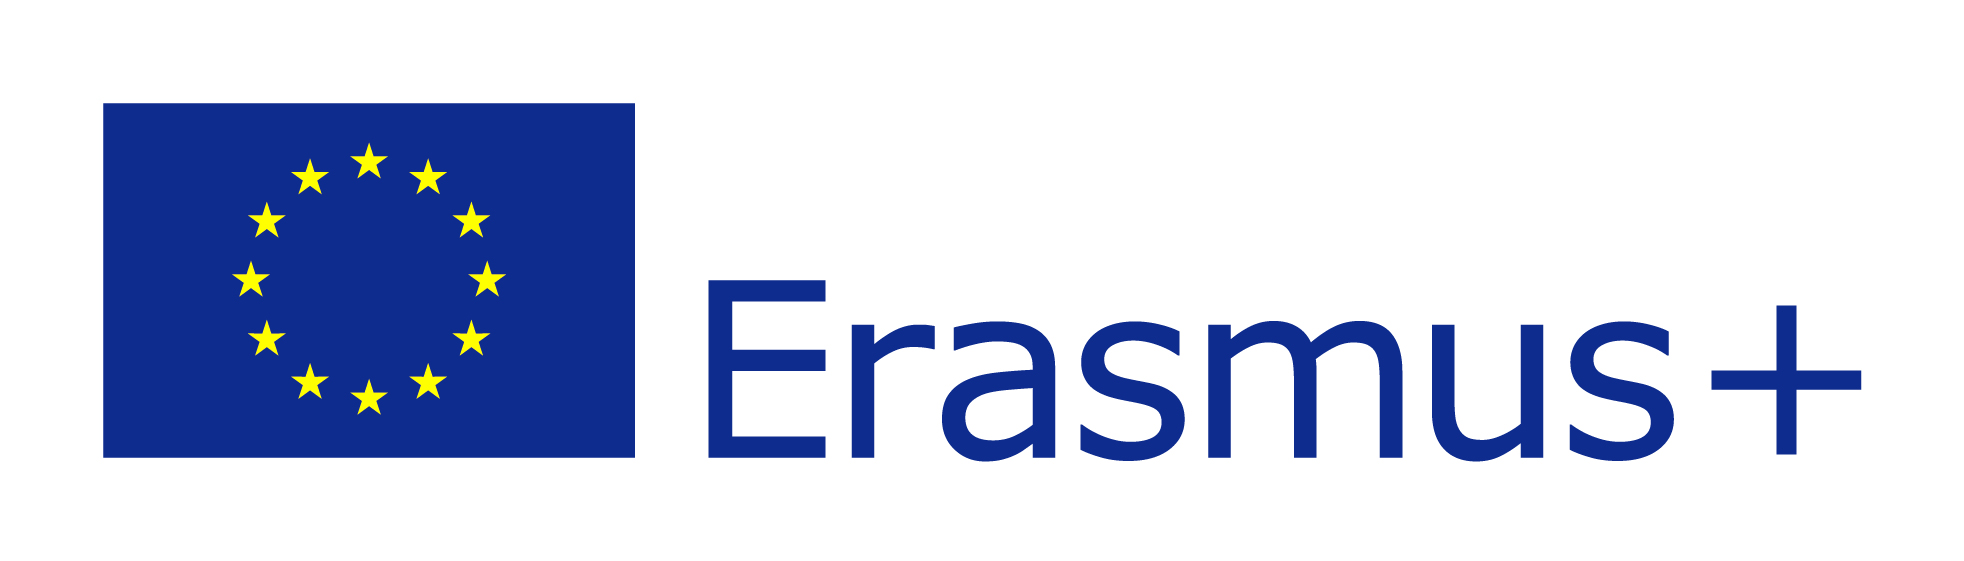 Logo de programa europeo Erasmus+